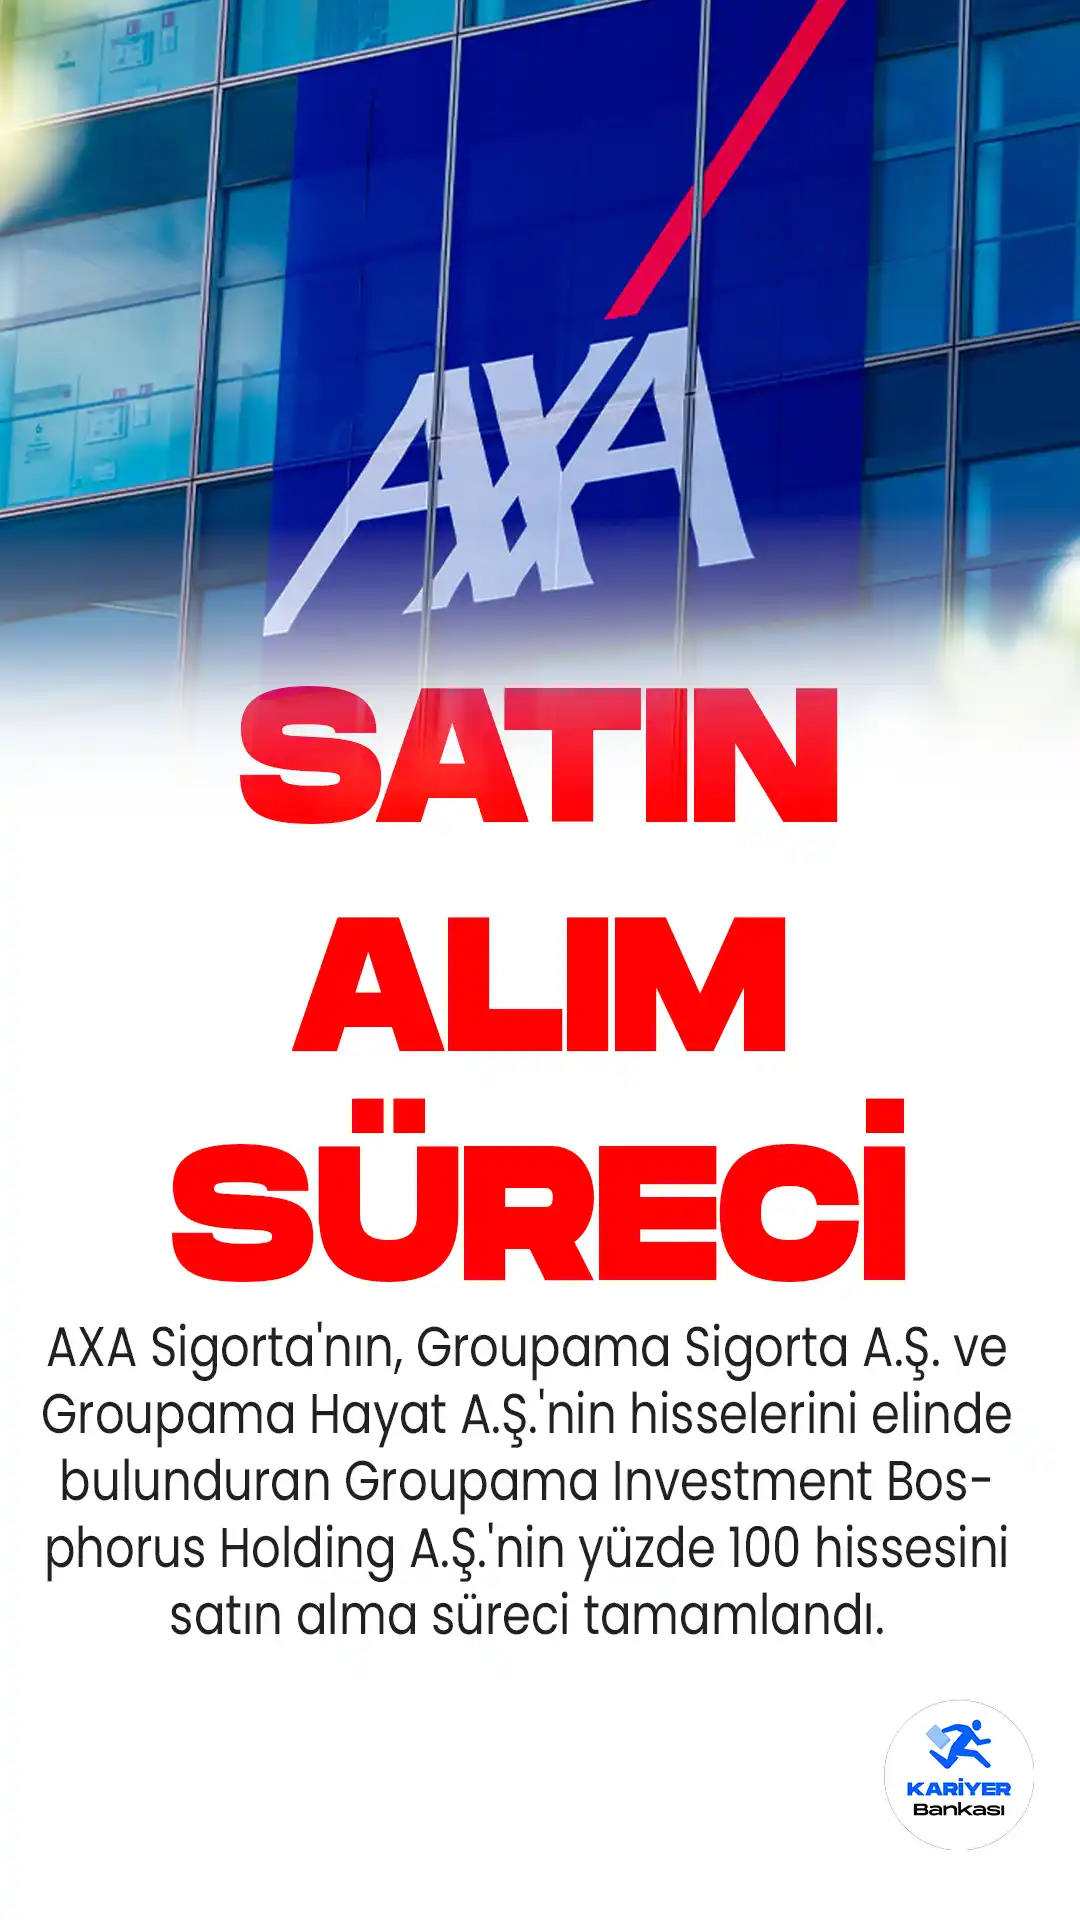 AXA Sigorta'nın, Groupama Sigorta A.Ş. ve Groupama Hayat A.Ş.'nin hisselerini elinde bulunduran Groupama Investment Bosphorus Holding A.Ş.'nin yüzde 100 hissesini satın alma süreci tamamlandı.